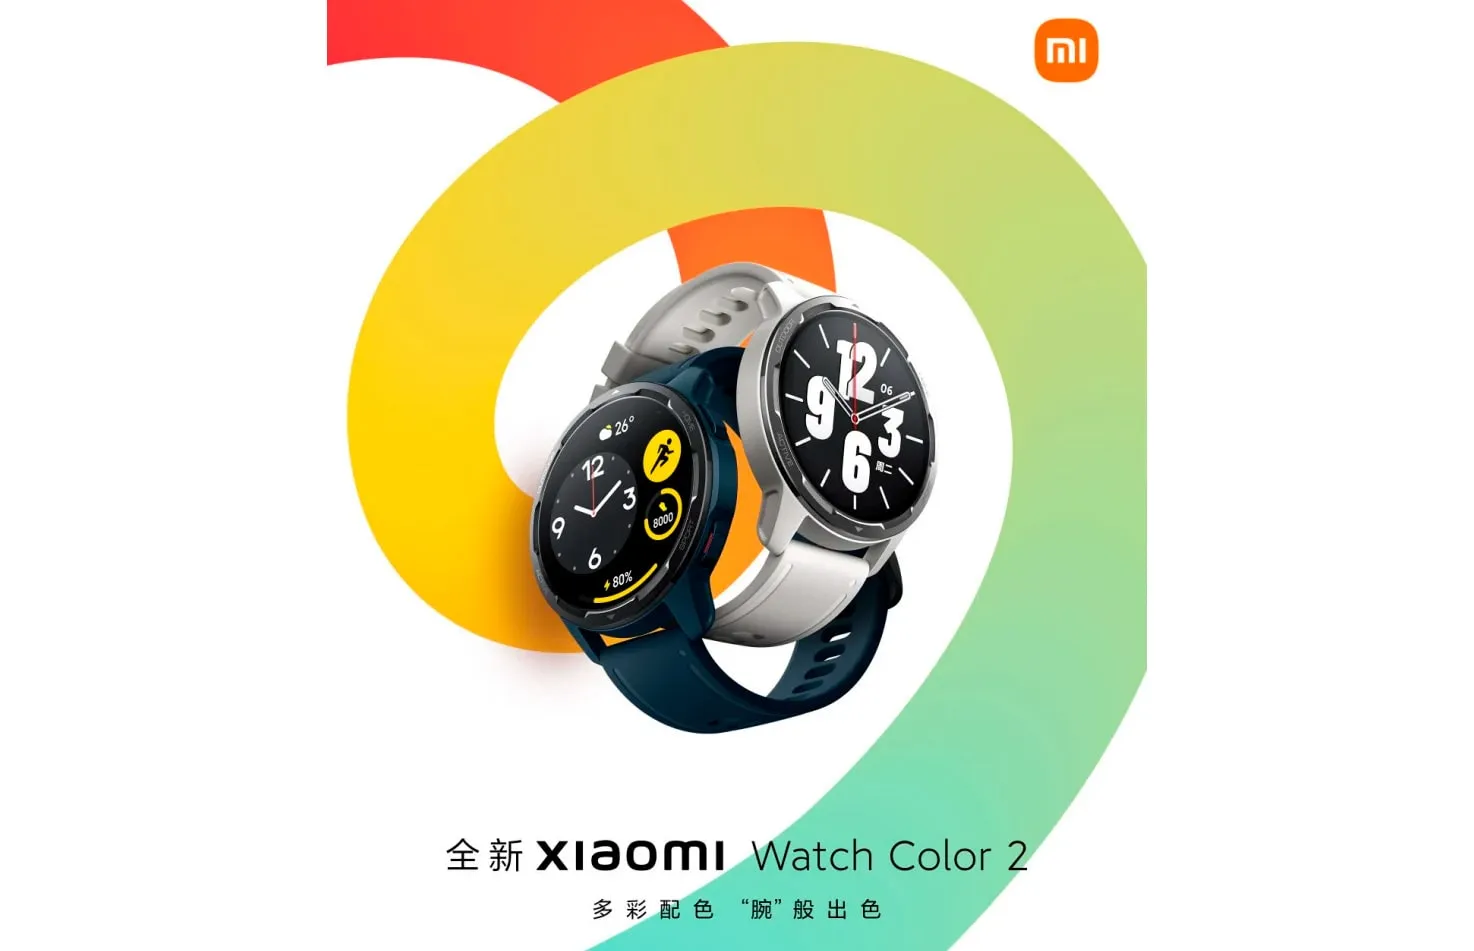 Xiaomi представит смарт-часы Watch Color 2 с более чем 200 циферблатами 27 сентября